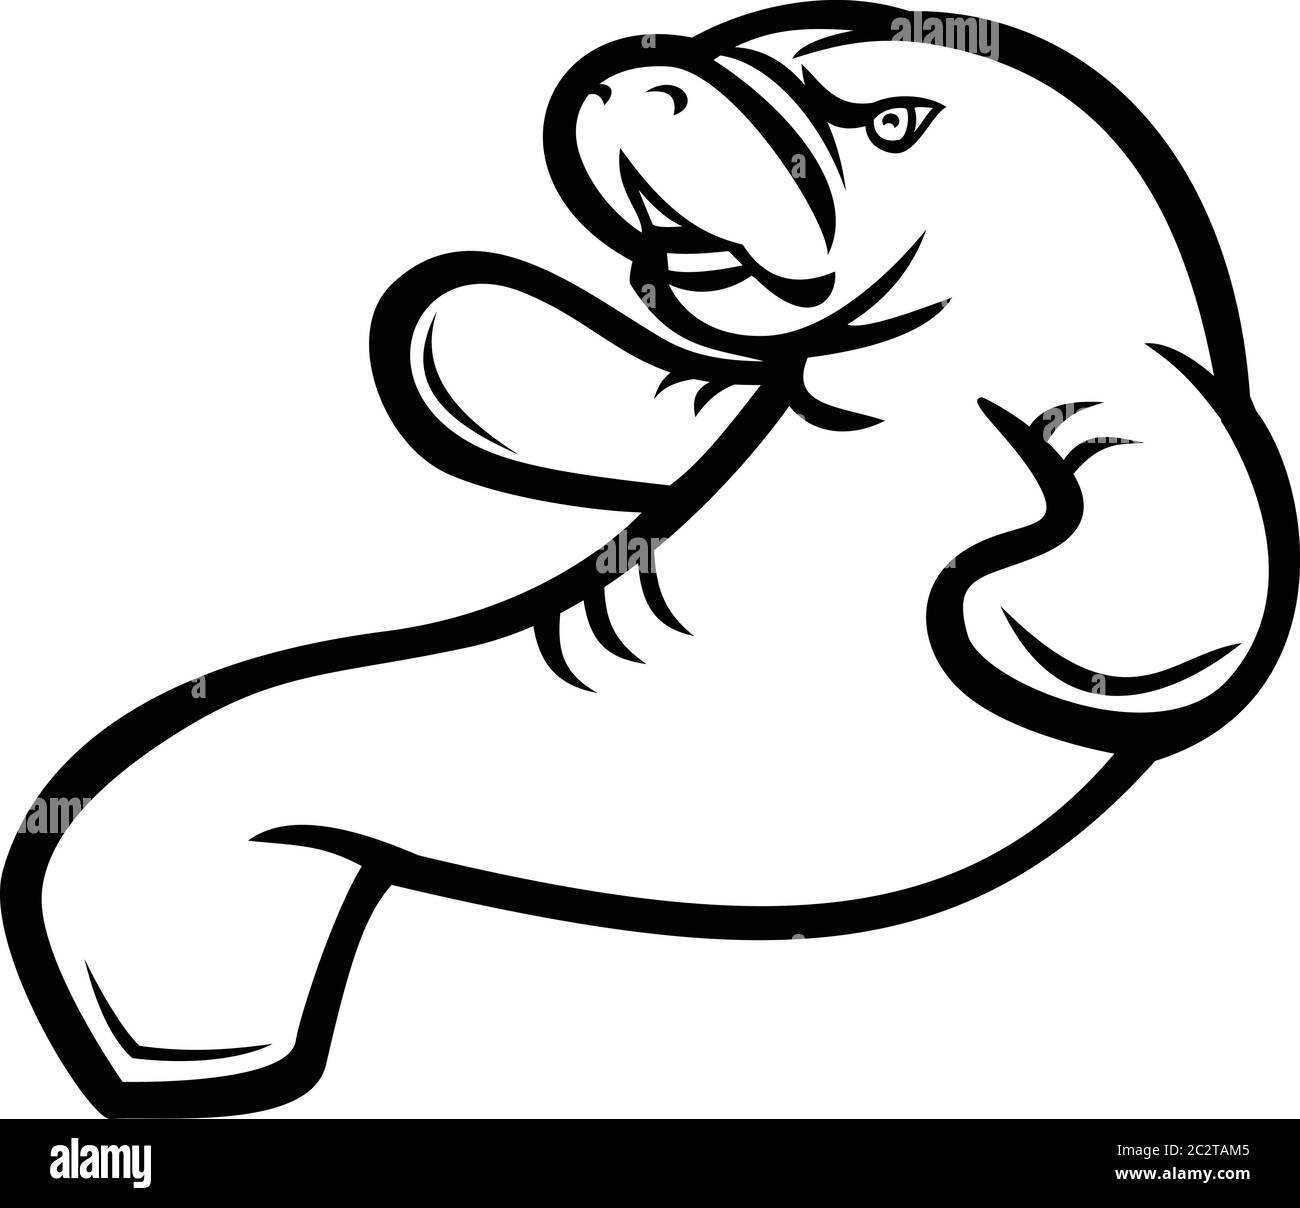 Schwarz-weiße Illustration eines wütenden Seekühen, Dugong oder Seenkuh, eines großen, voll aquatischen, meist pflanzenfressenden Meeressäugers, das von hier aus gesehen aufschwimmt Stock Vektor